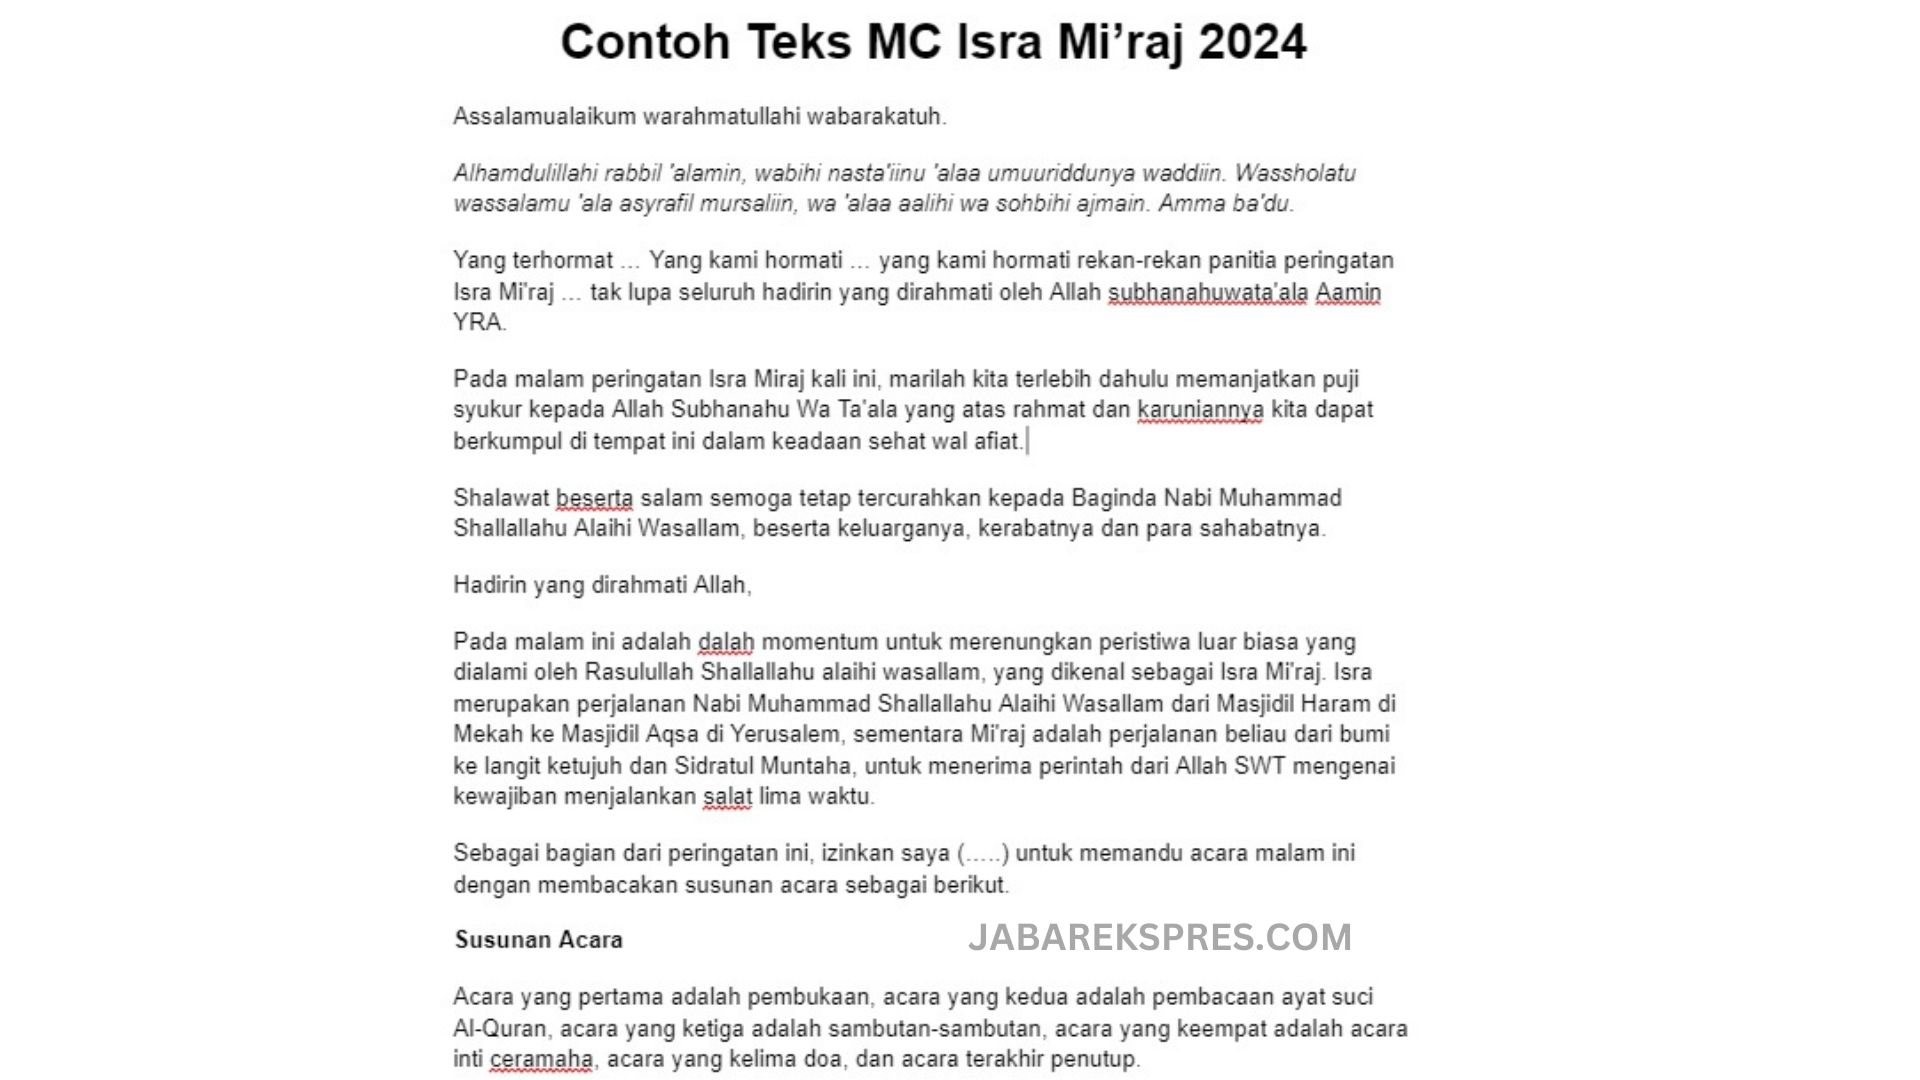 Contoh Teks MC Isra Mi'raj Terbaru 2024 dan Susunan Acara, Link PDF dan Doc Bisa Diunduh Berikut Ini/ JabarEkspres.com